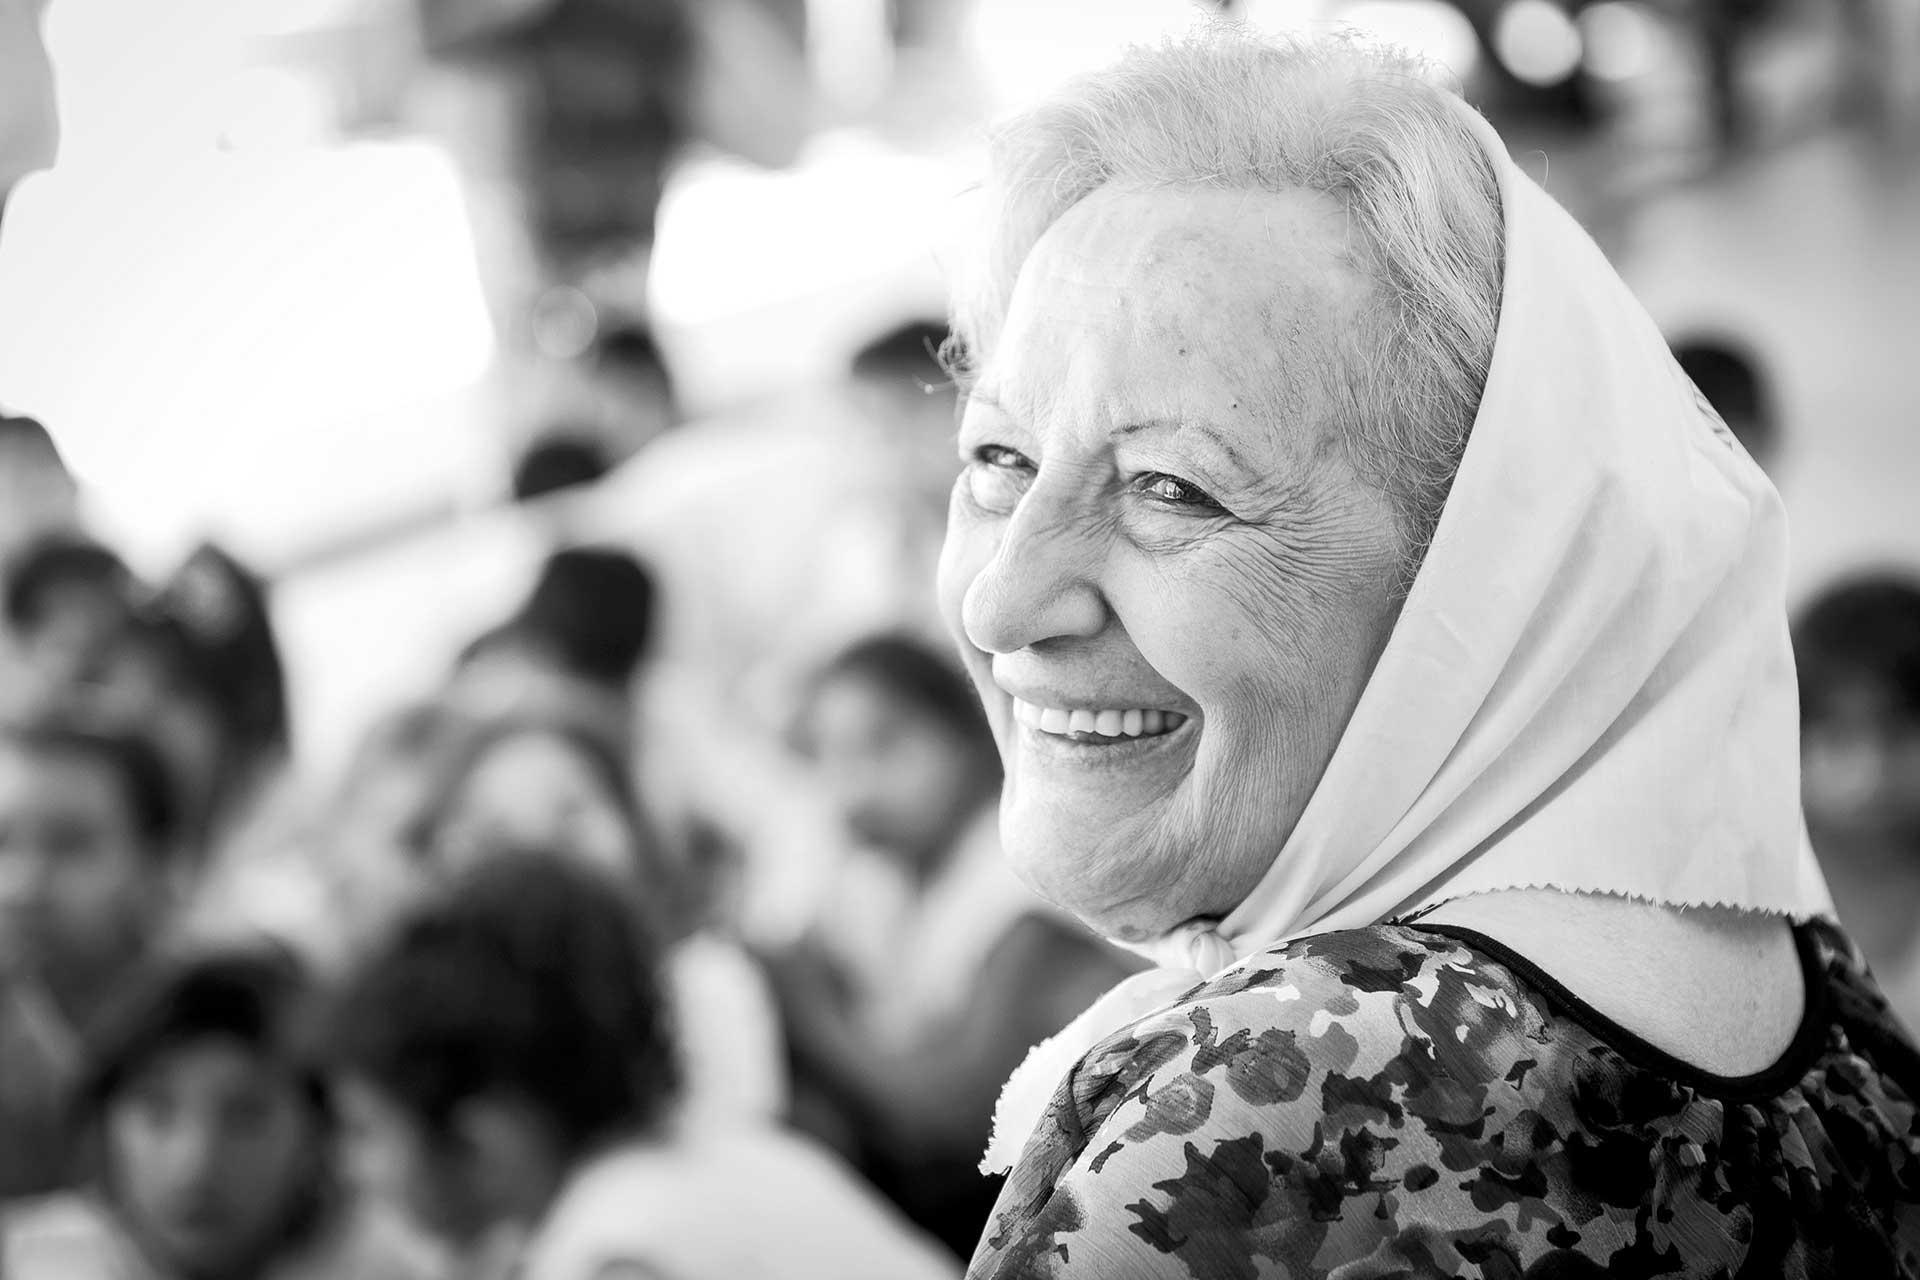 Retrato fotográfico, en blanco y negro, de Carmen Loréfice, Madre de Plaza de Mayo Línea Fundadora, durante un acto de las mismas